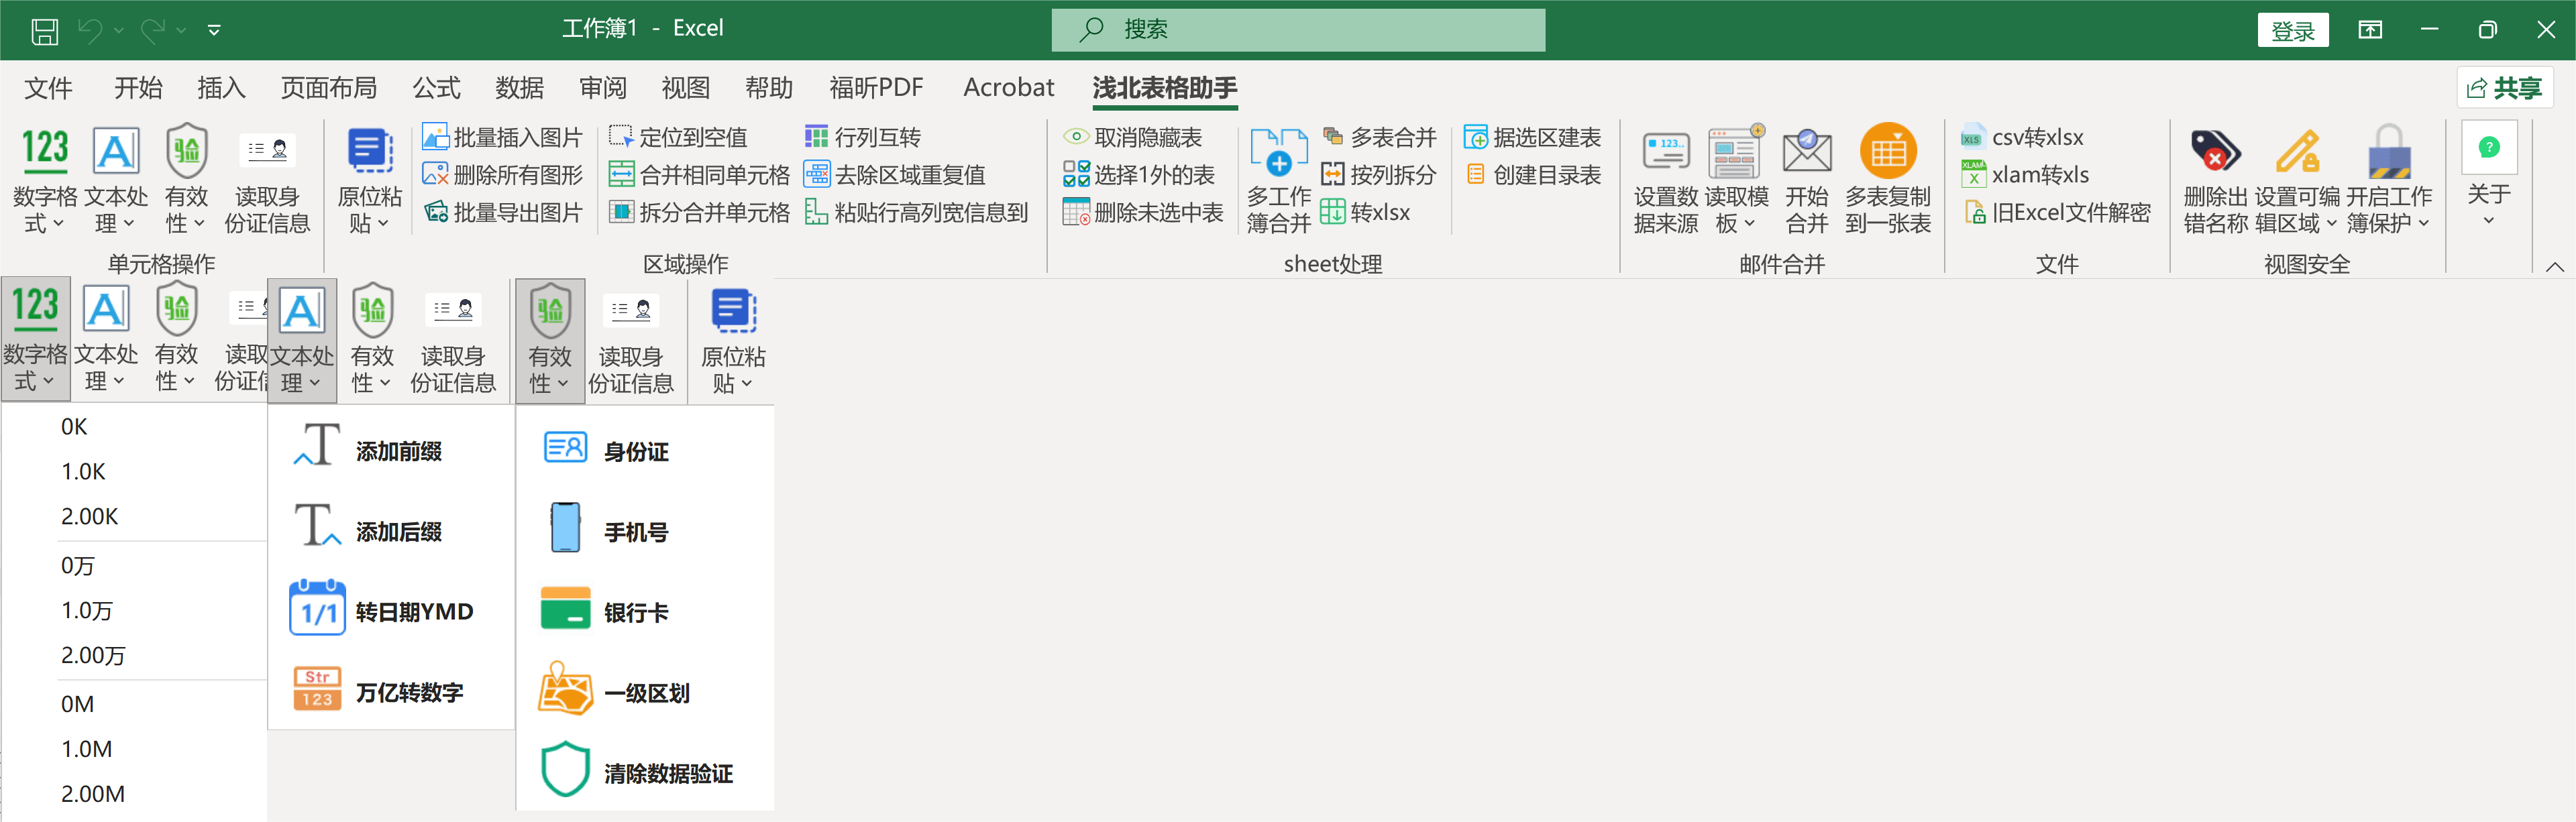 Windows 浅北表格助手_微软Excel、WPS表格免费插件